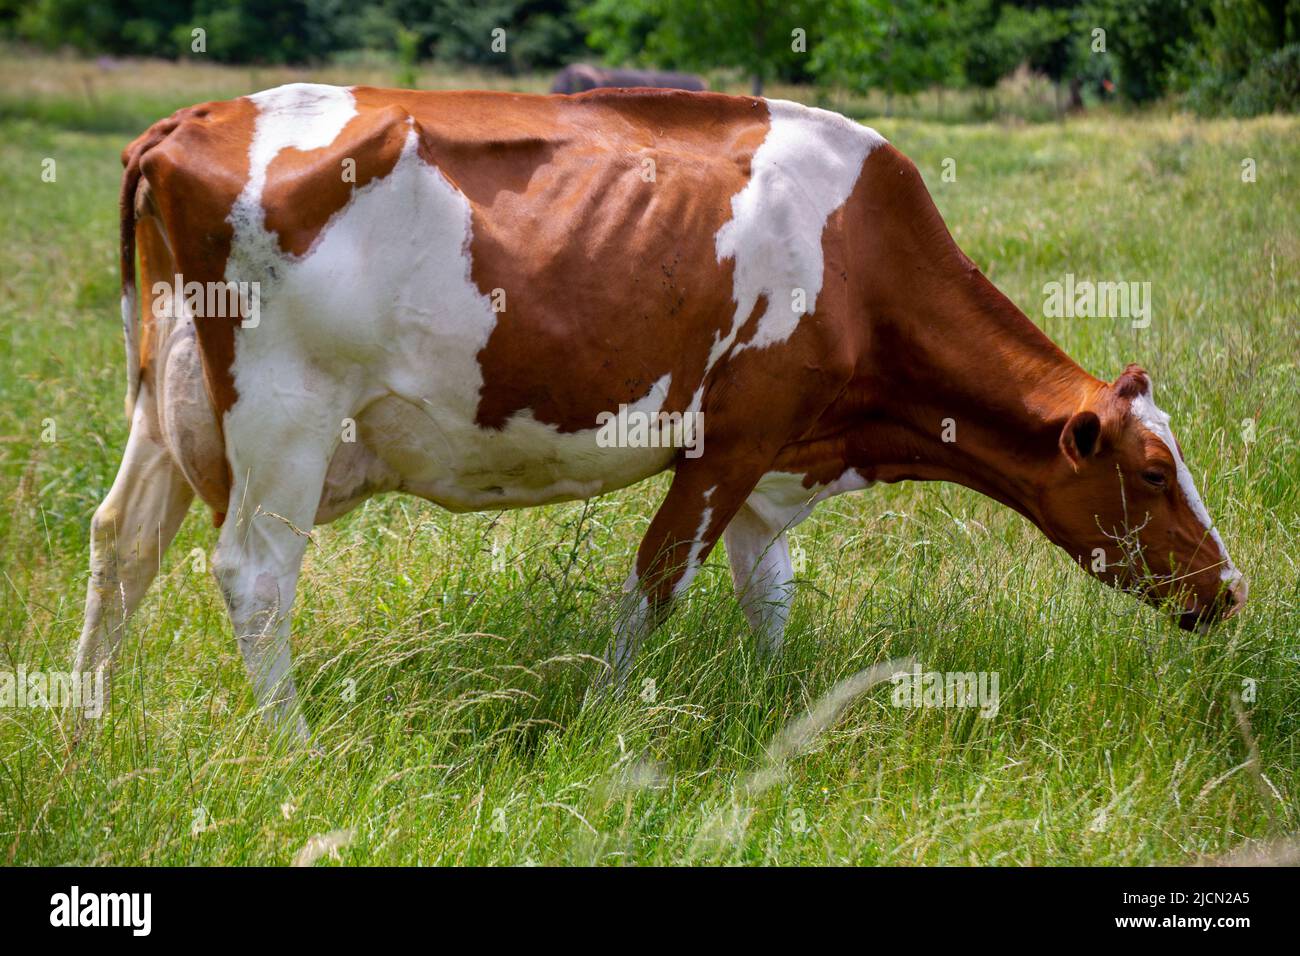 Vaches laitières (Simmental) en pâturage dans la région du Palatinat, en Allemagne Banque D'Images